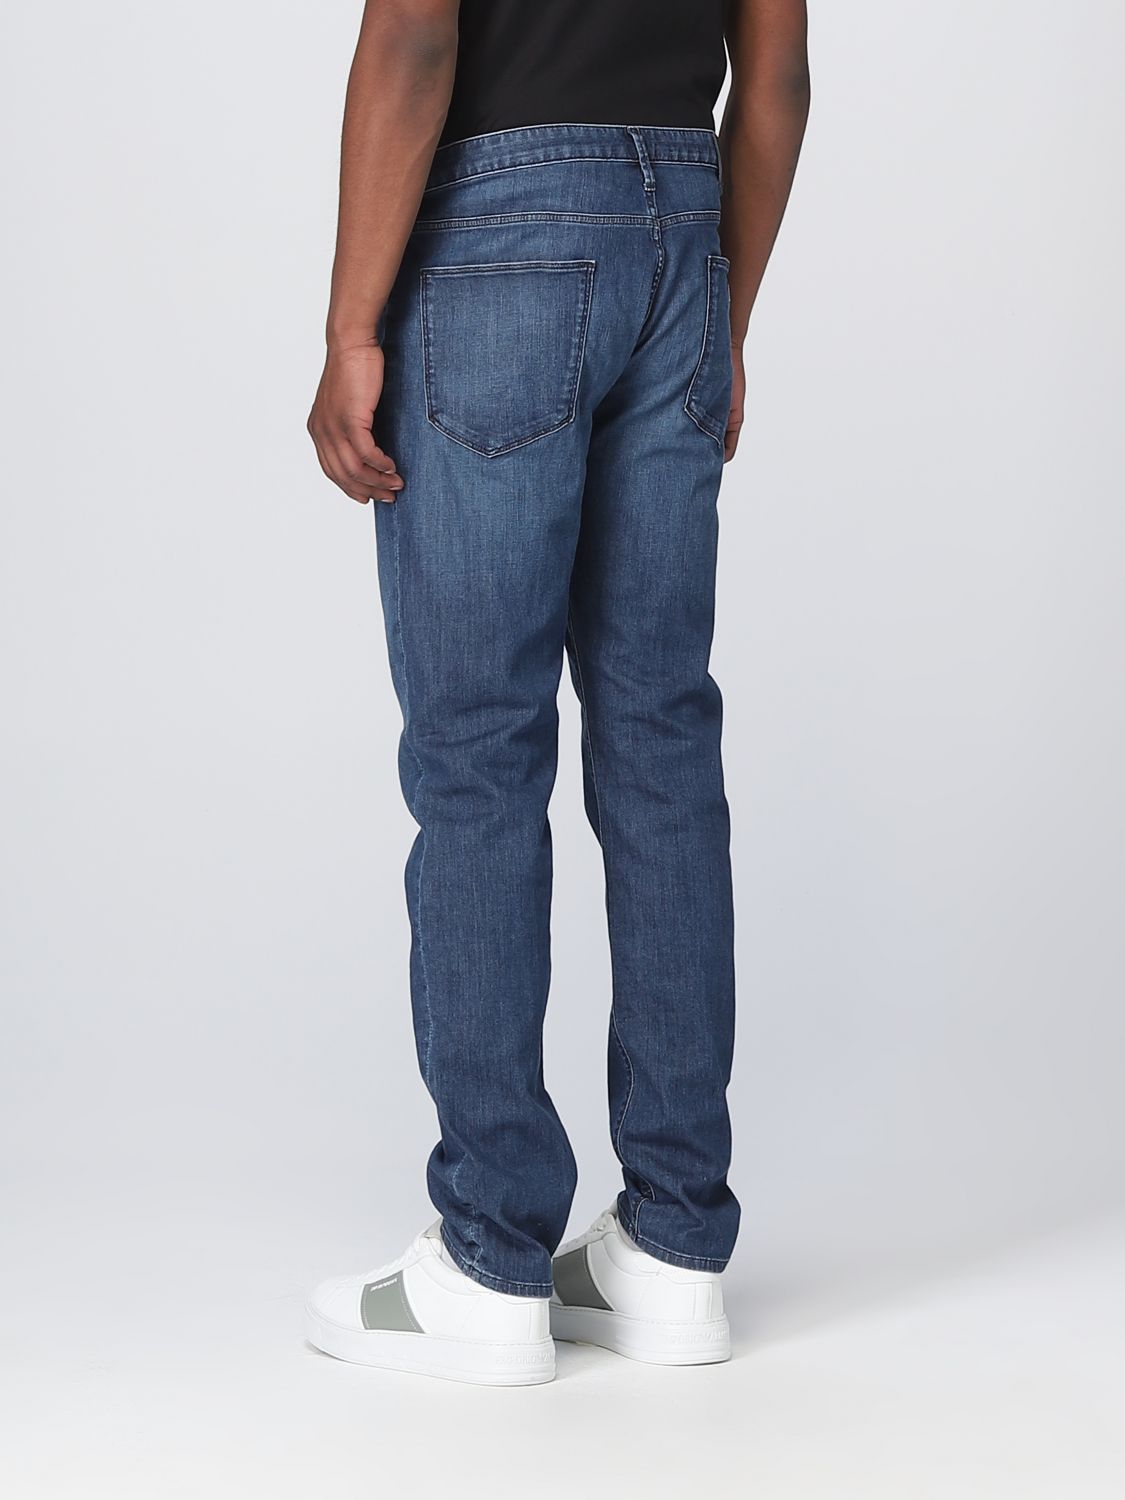 Vermindering spiegel halsband EMPORIO ARMANI: jeans for man - Denim | Emporio Armani jeans 8N1J061D85Z  online on GIGLIO.COM